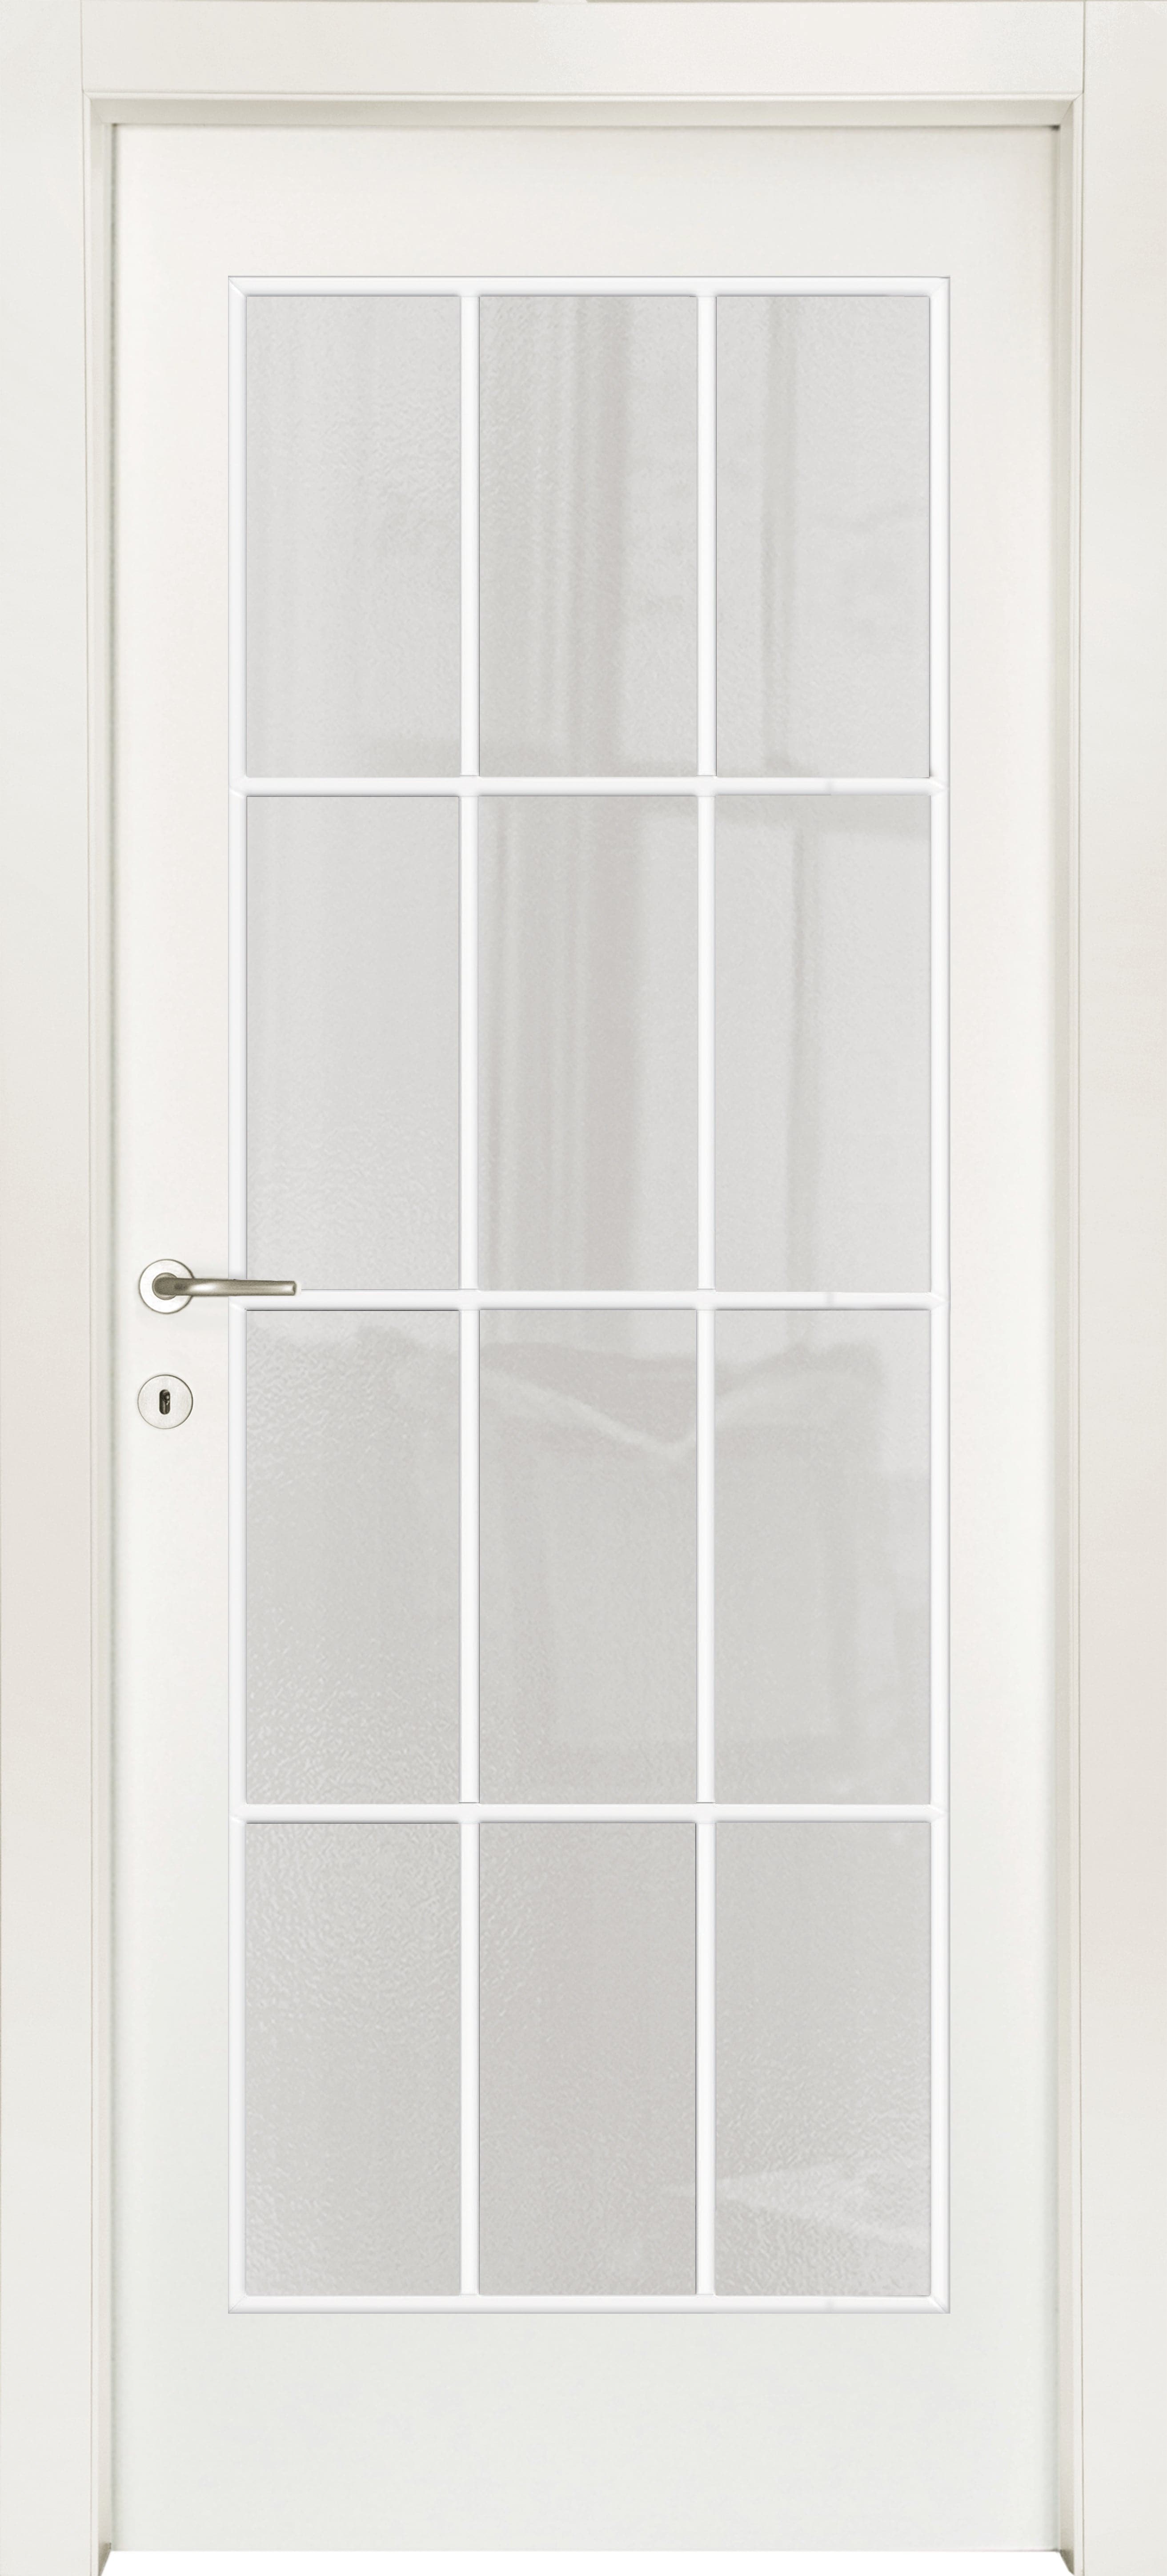 STRAUSS DOOR 80 X 210 LEFT MILK GLASS WITH WHITE MUNTIN BAR